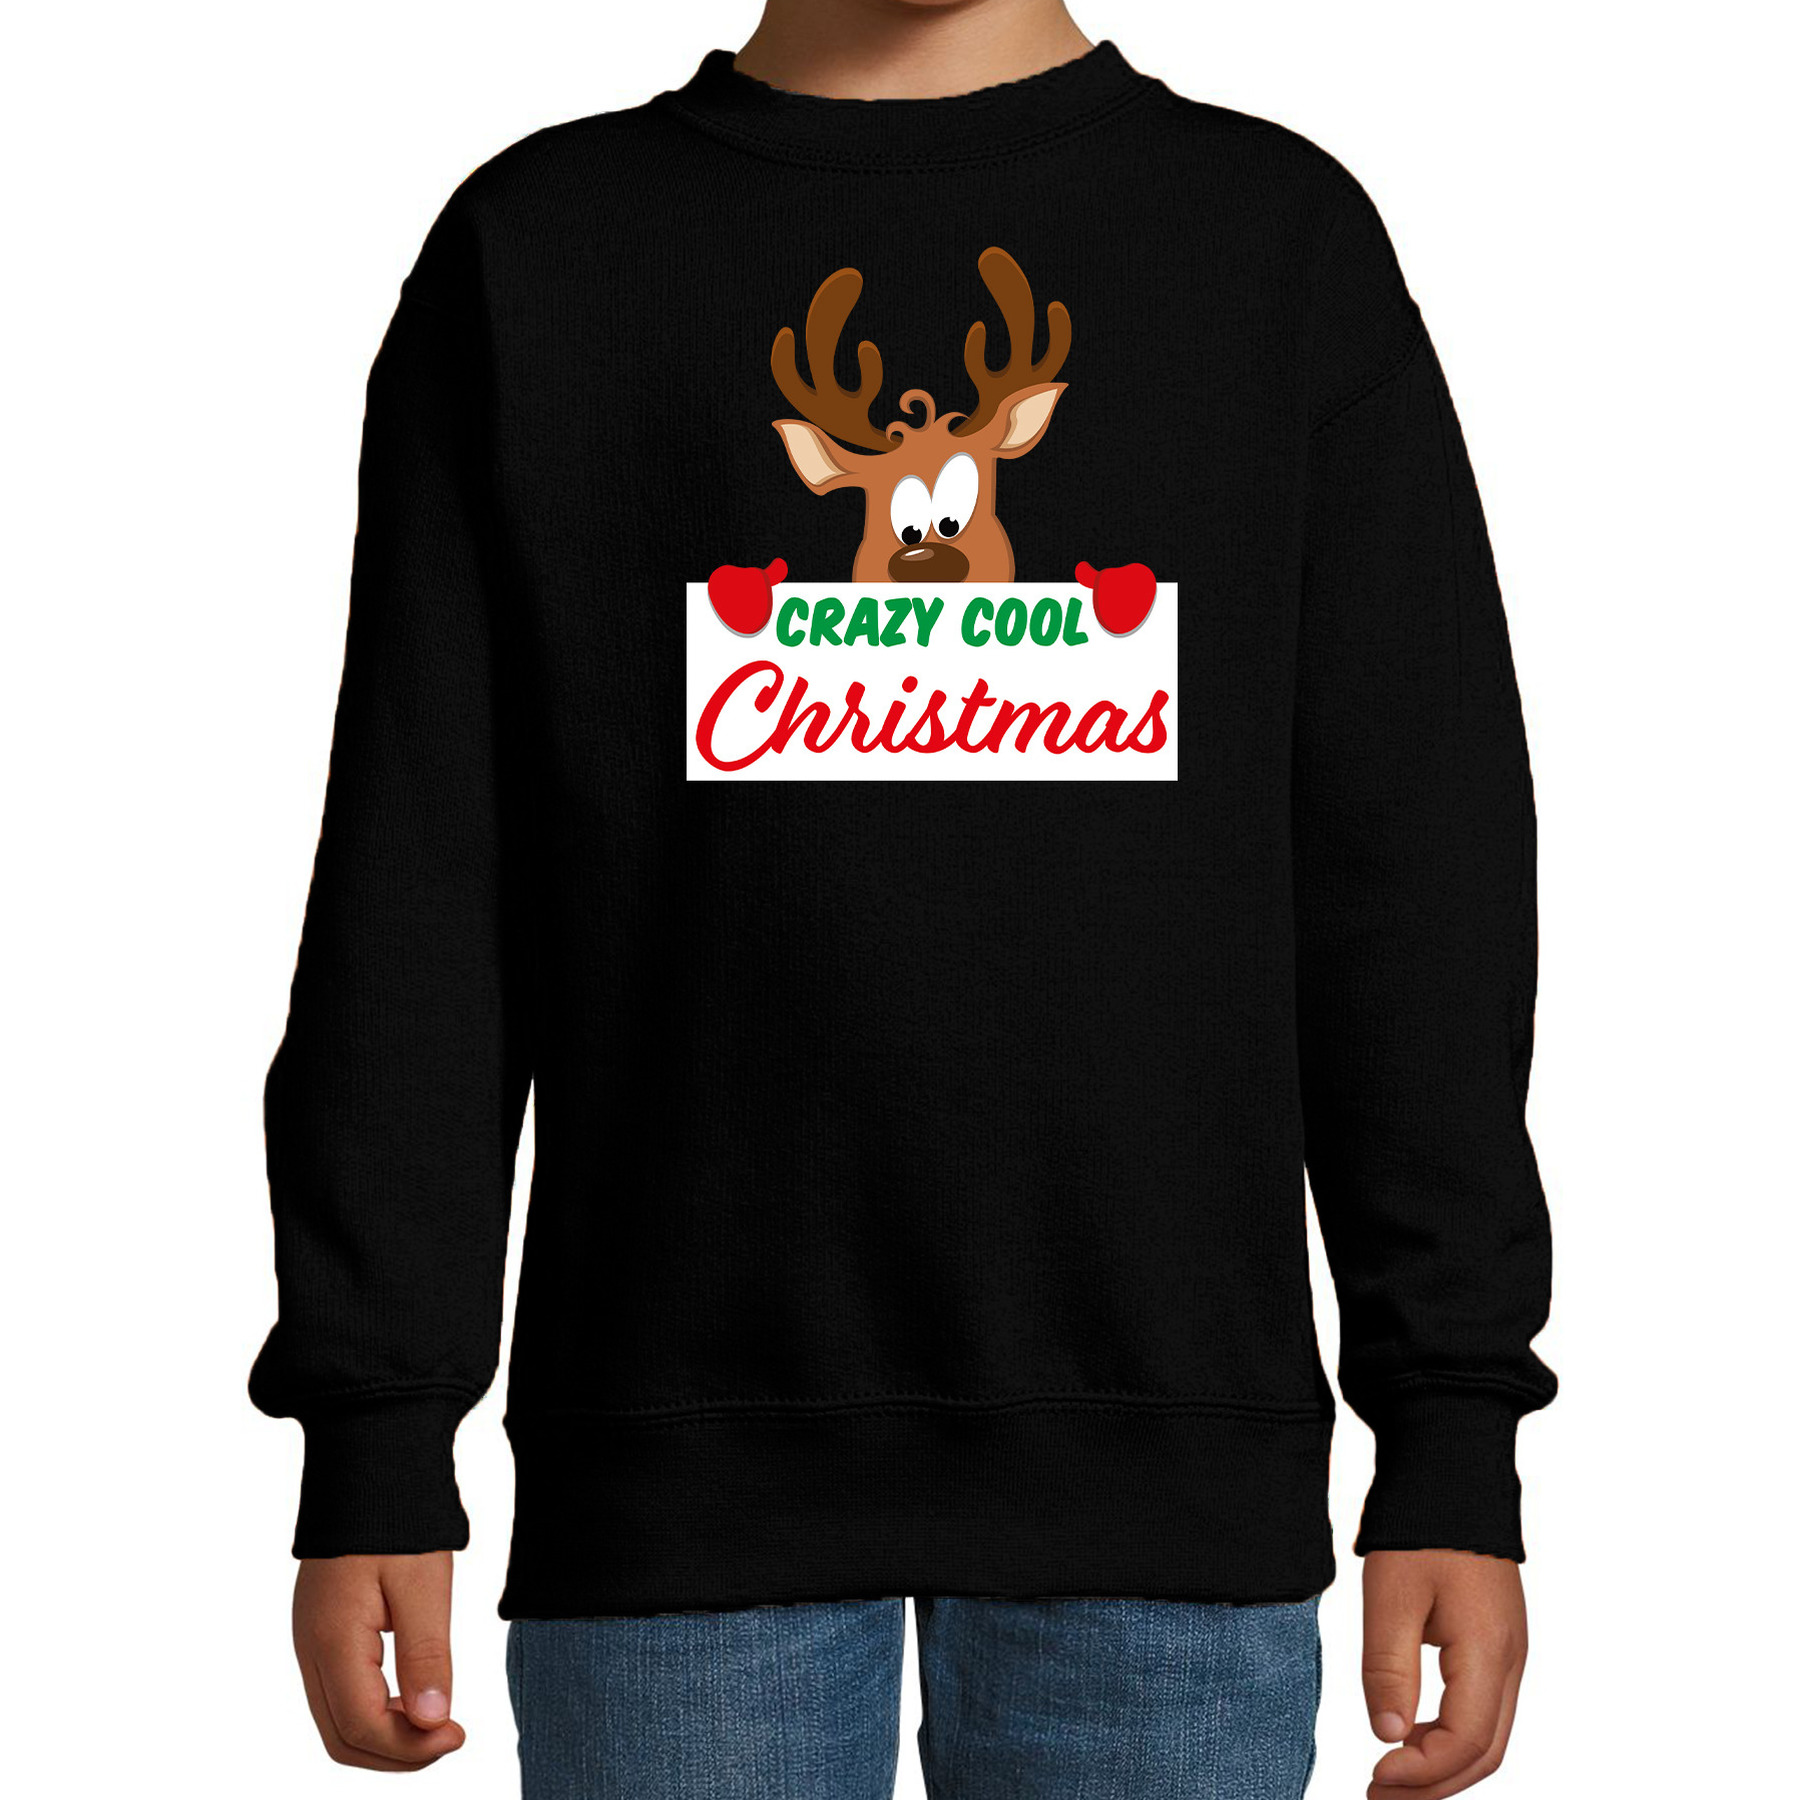 Crazy cool Christmas Kerstsweater-Kersttrui zwart voor kinderen